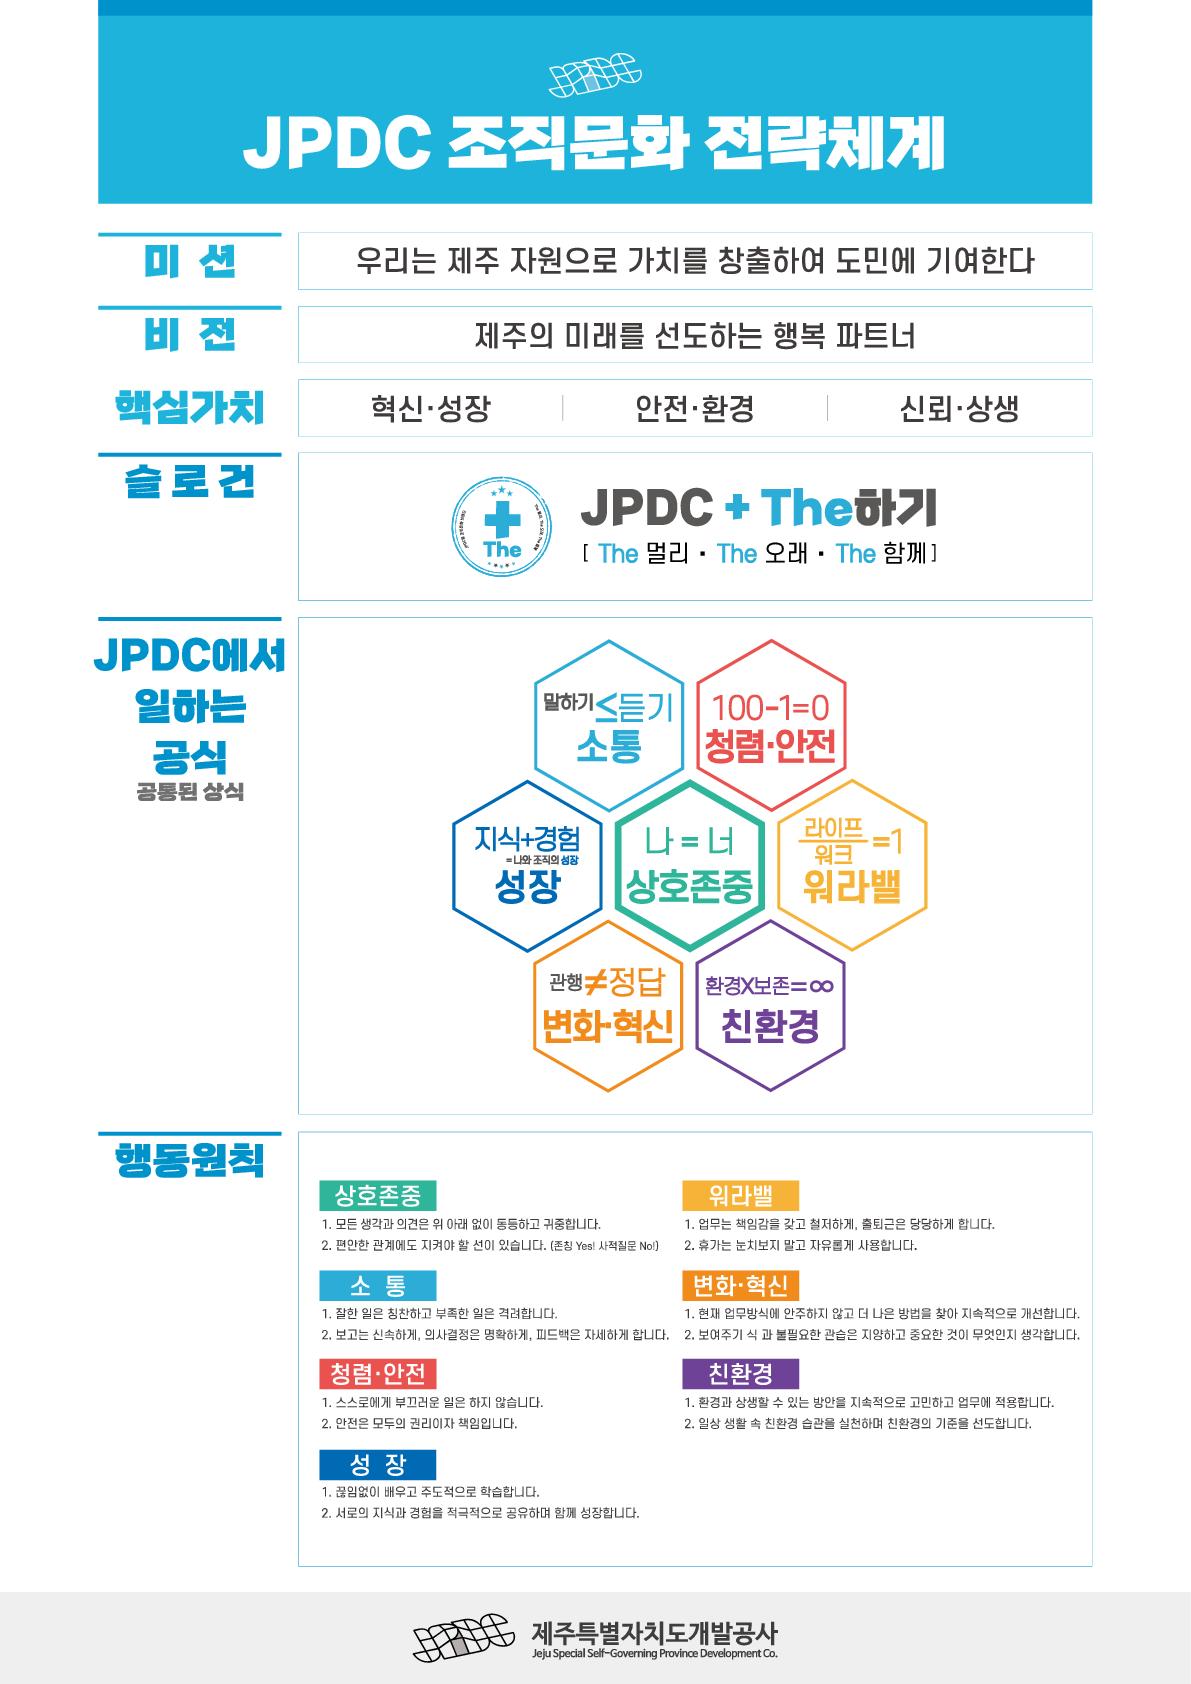 JPDC 조직문화 전략체계(상세내용 하단 참조)